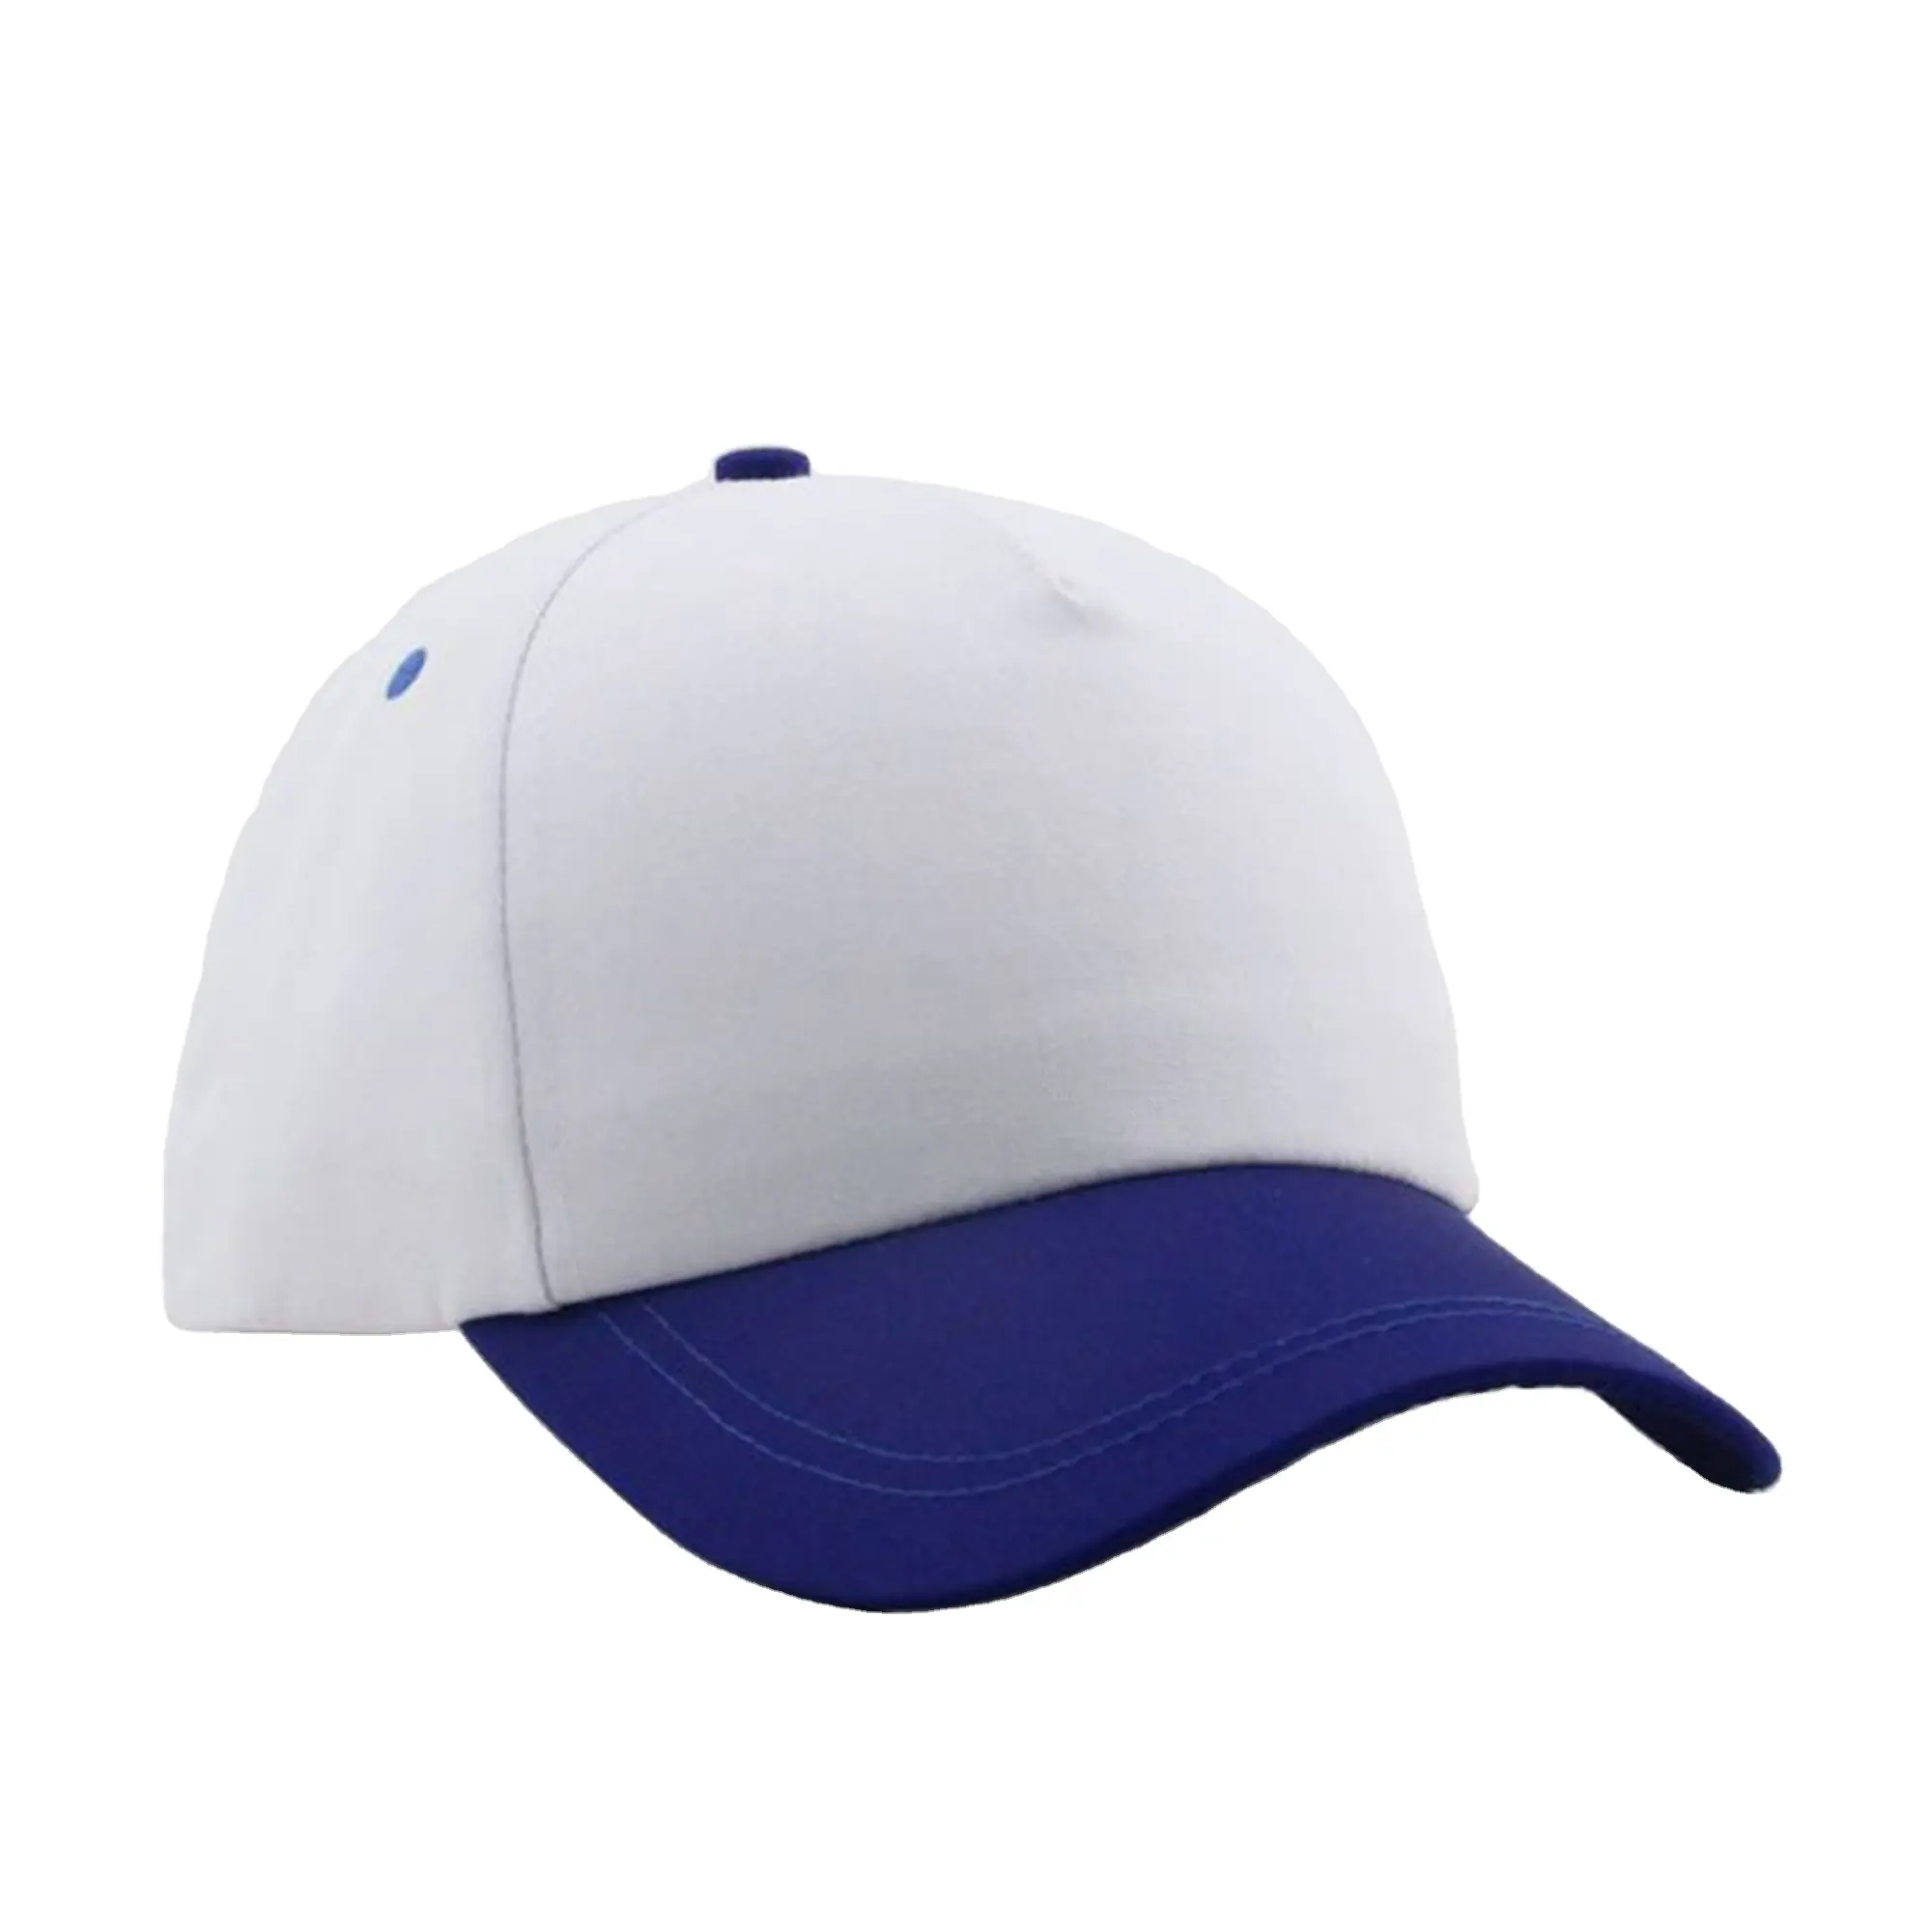 Benutzer definierte hochwertige 5 Panel A Frame Style Baumwolle Unisex Baseball Cap Two Tone Hats Golf kappe für Männer